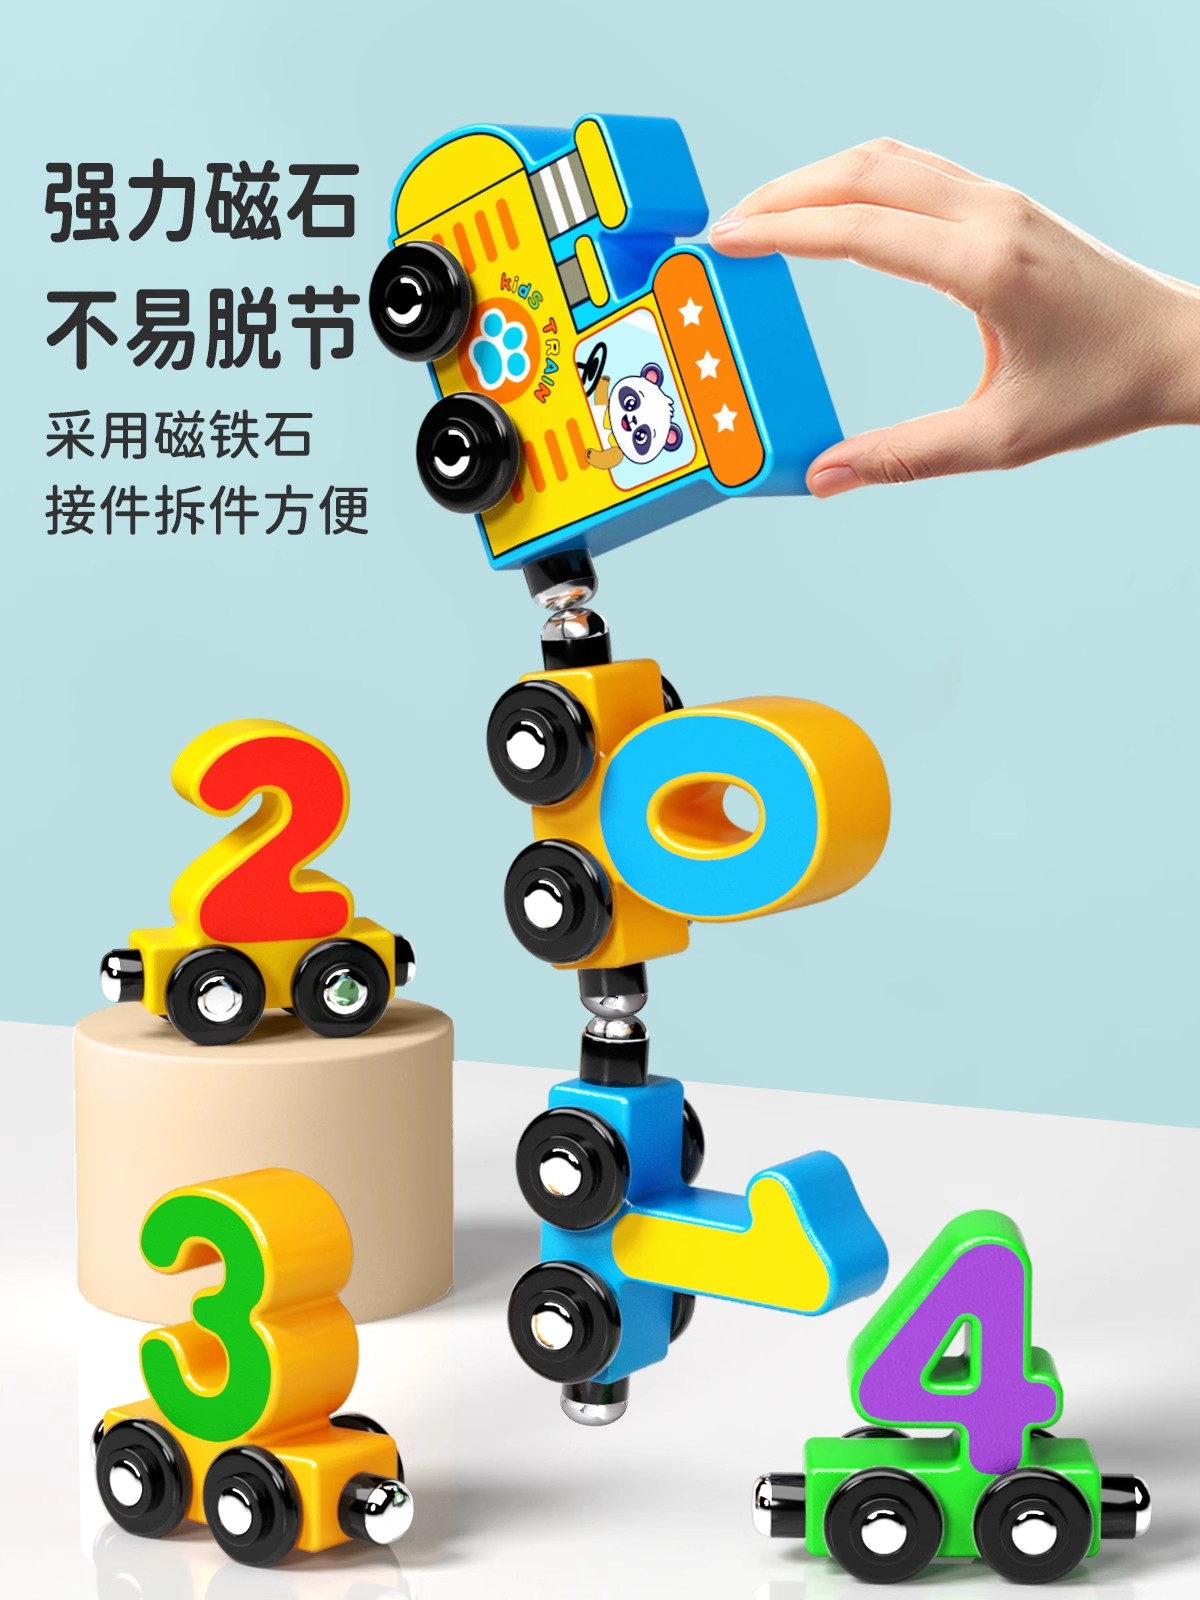 磁性数字小火车玩具儿童益智拼装磁力积木宝宝女孩1一3岁到6男孩